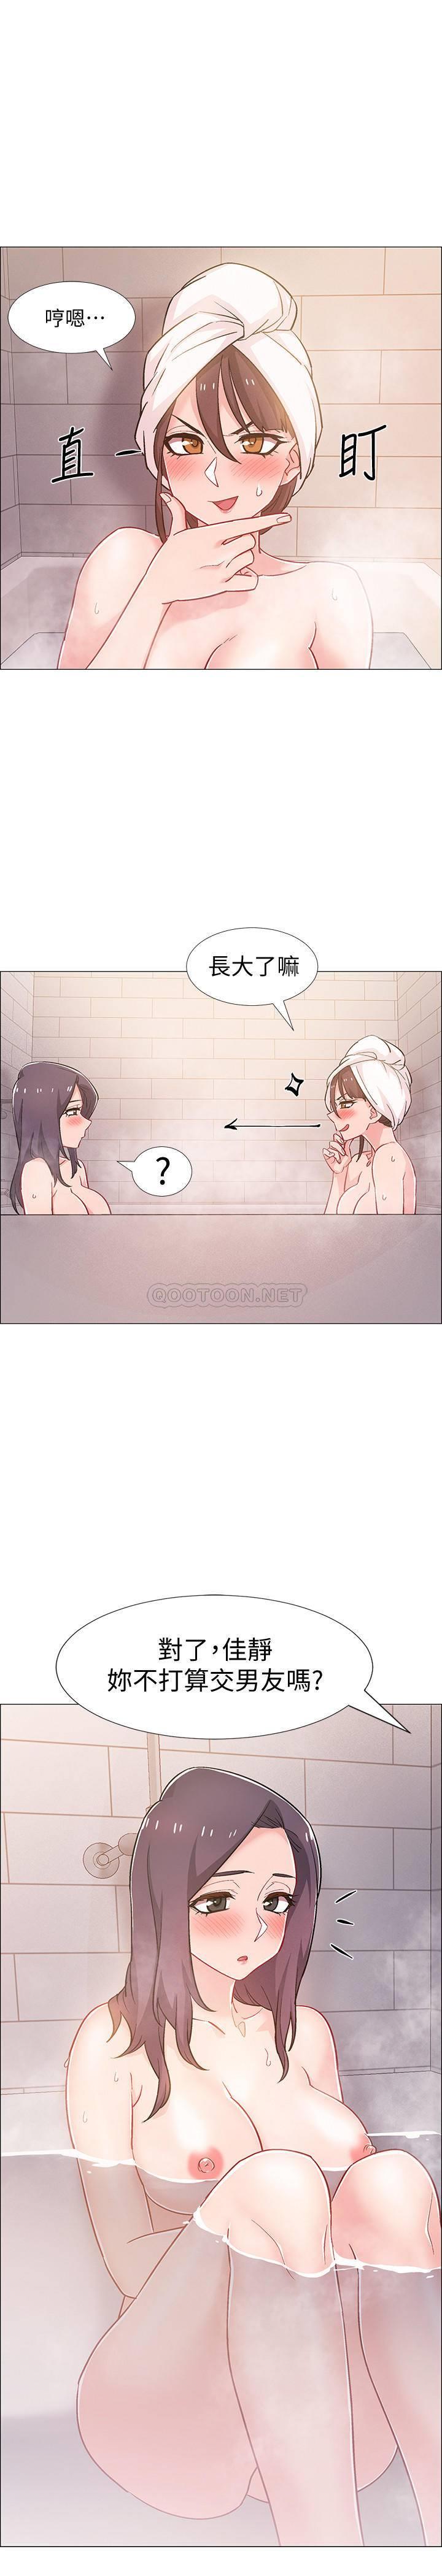 《入伍倒数中》漫画 第30话 - 在浴室谈心的姐妹